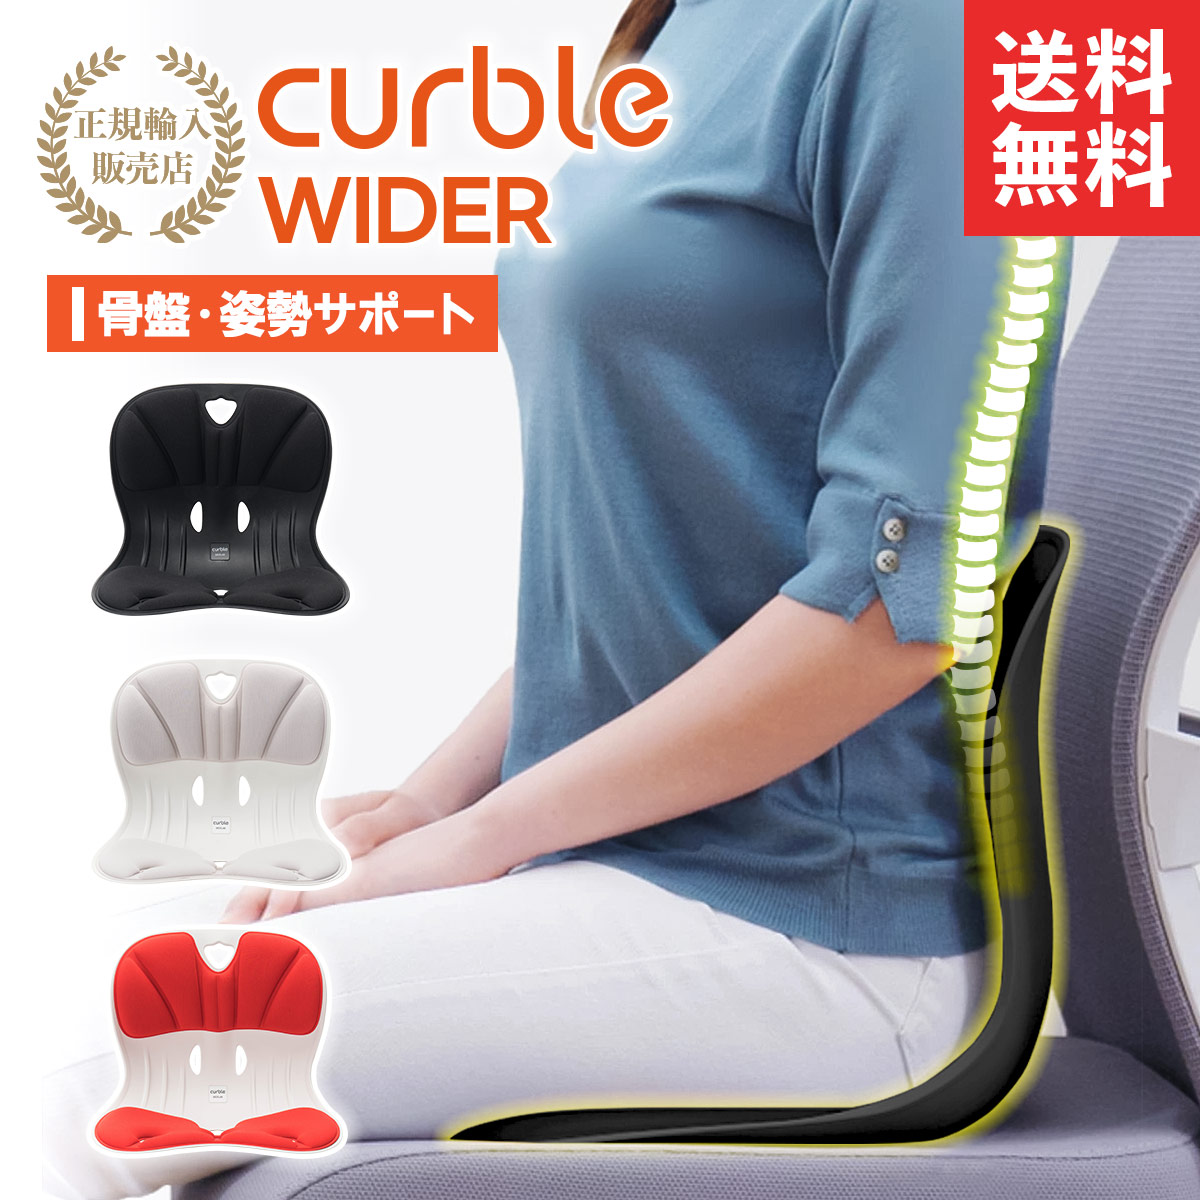 カーブルチェア ワイド 姿勢を良くする 姿勢矯正 骨盤のゆがみ 姿勢を正す 腰痛改善 姿勢サポート 座椅子 椅子 クッション